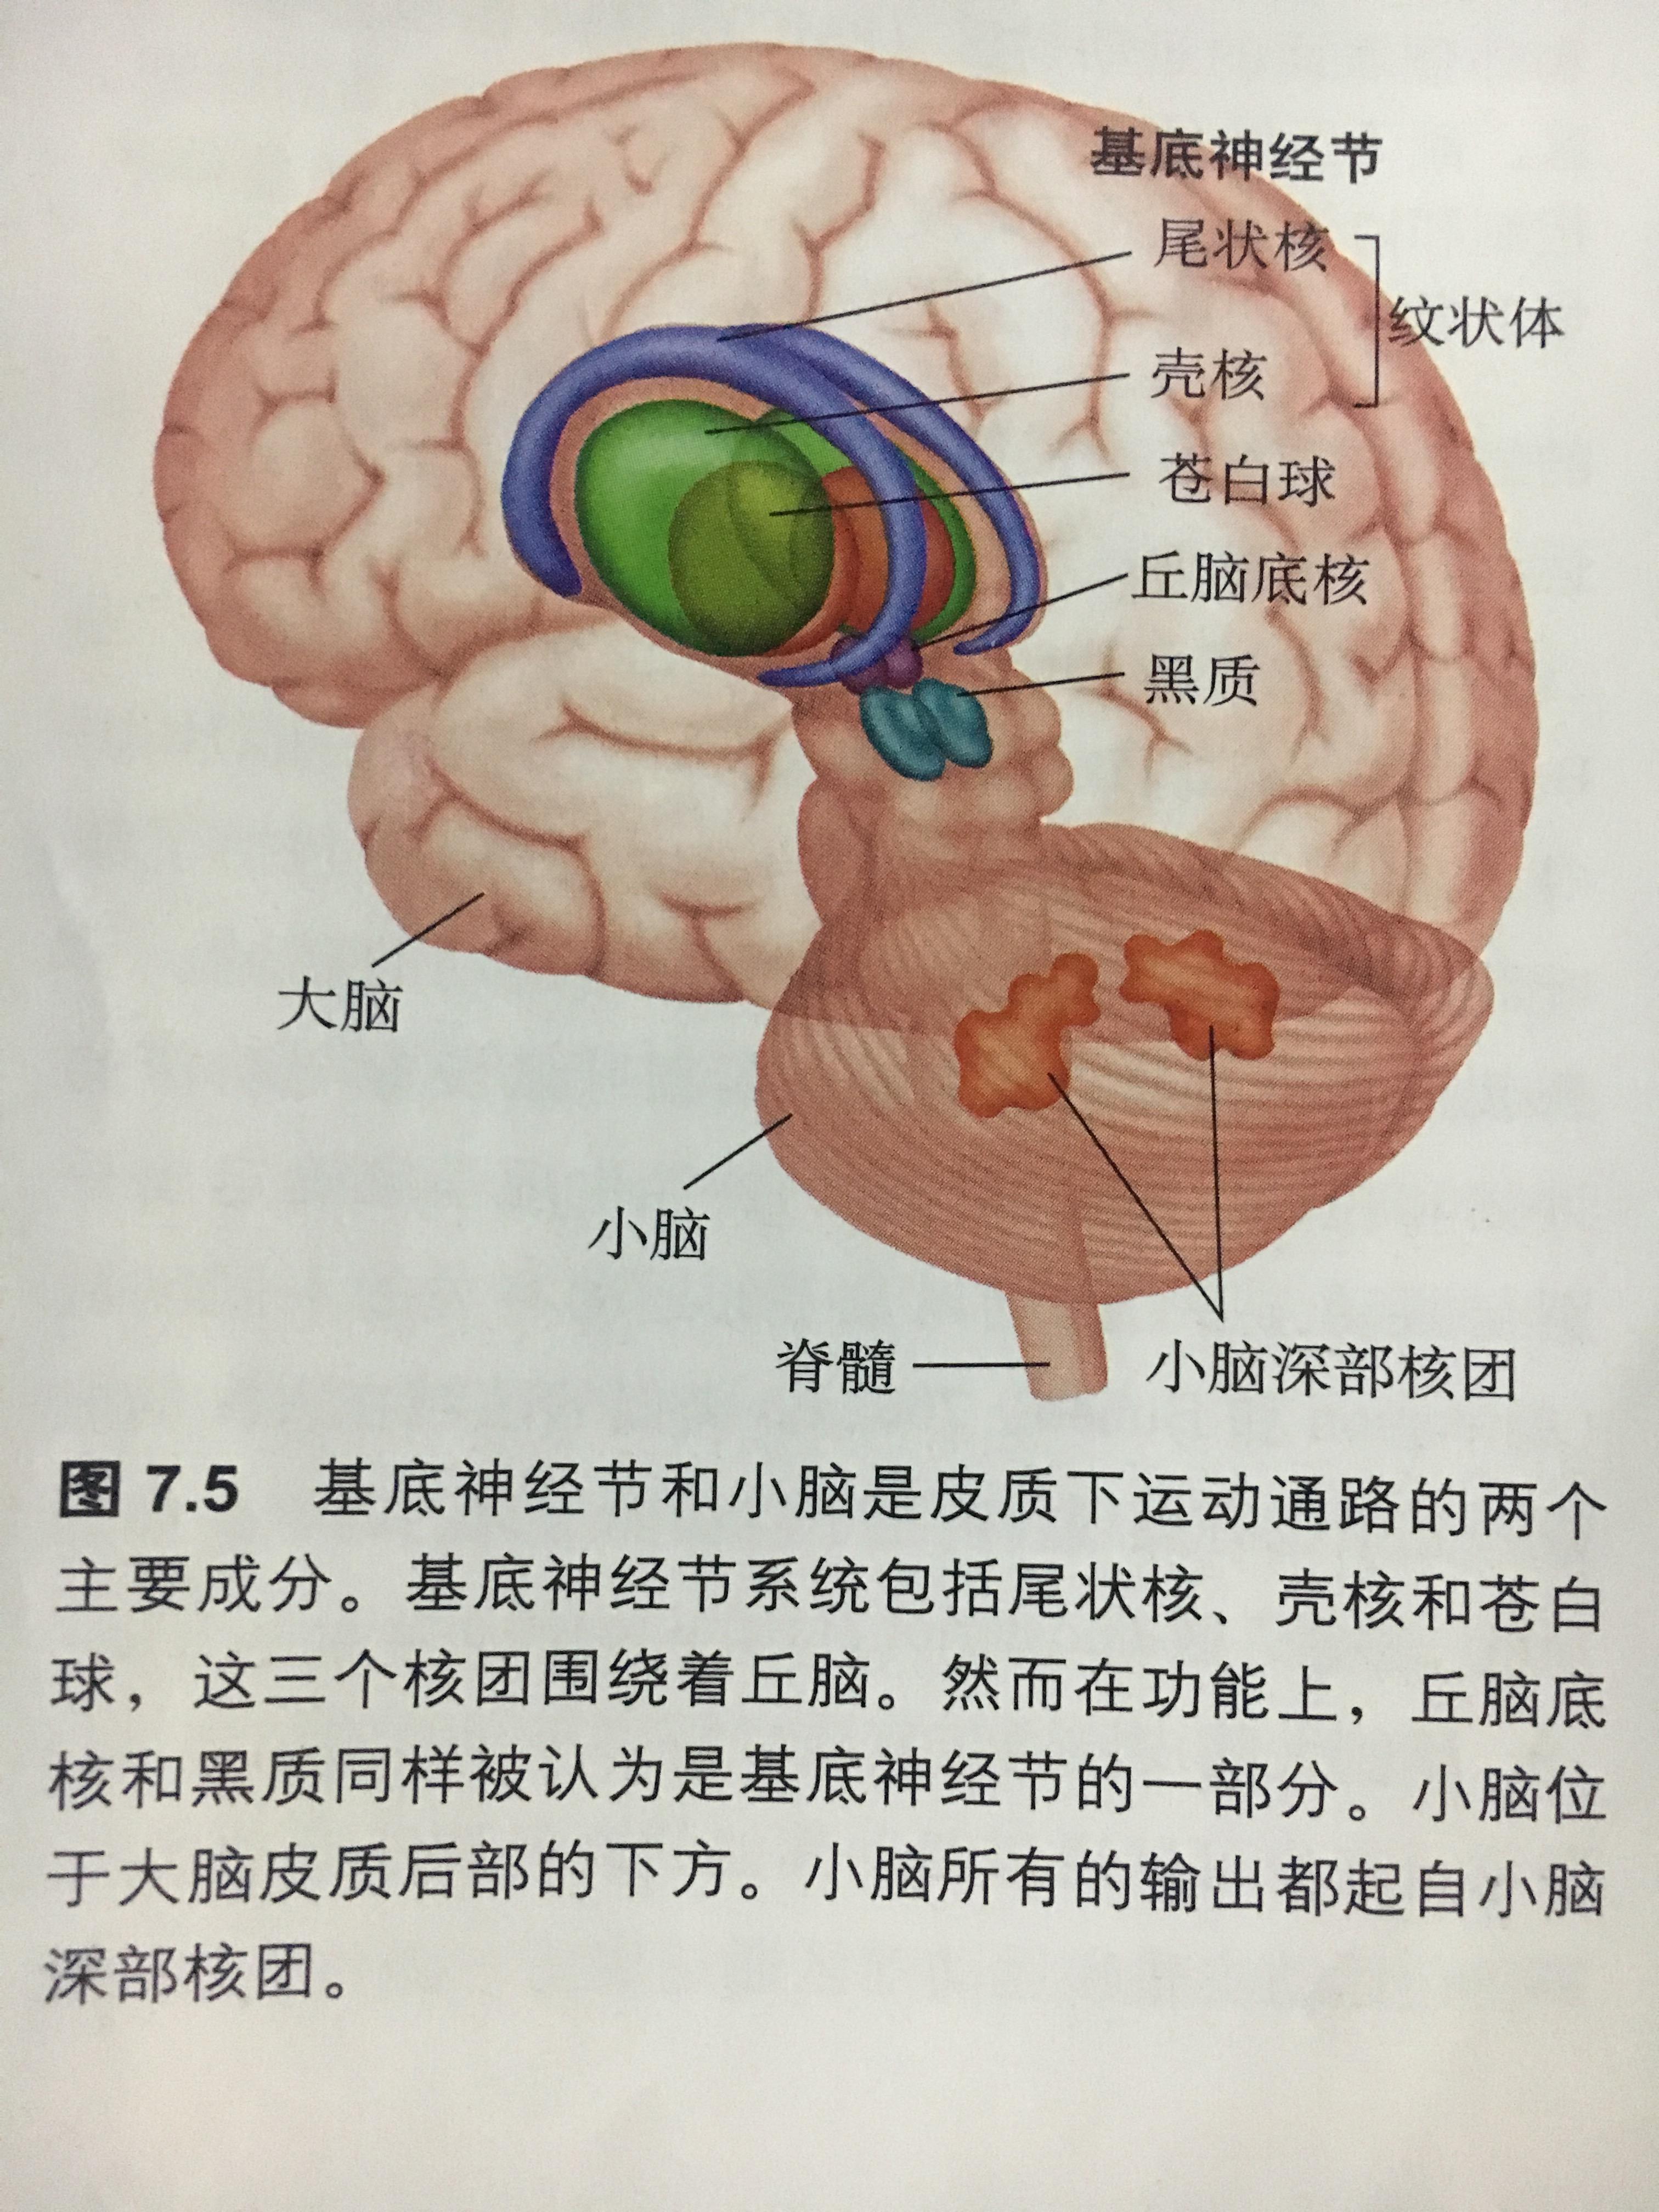 基底神经节如下图,底神经节包括尾状核,壳核,苍白球,有些划分还包括黑